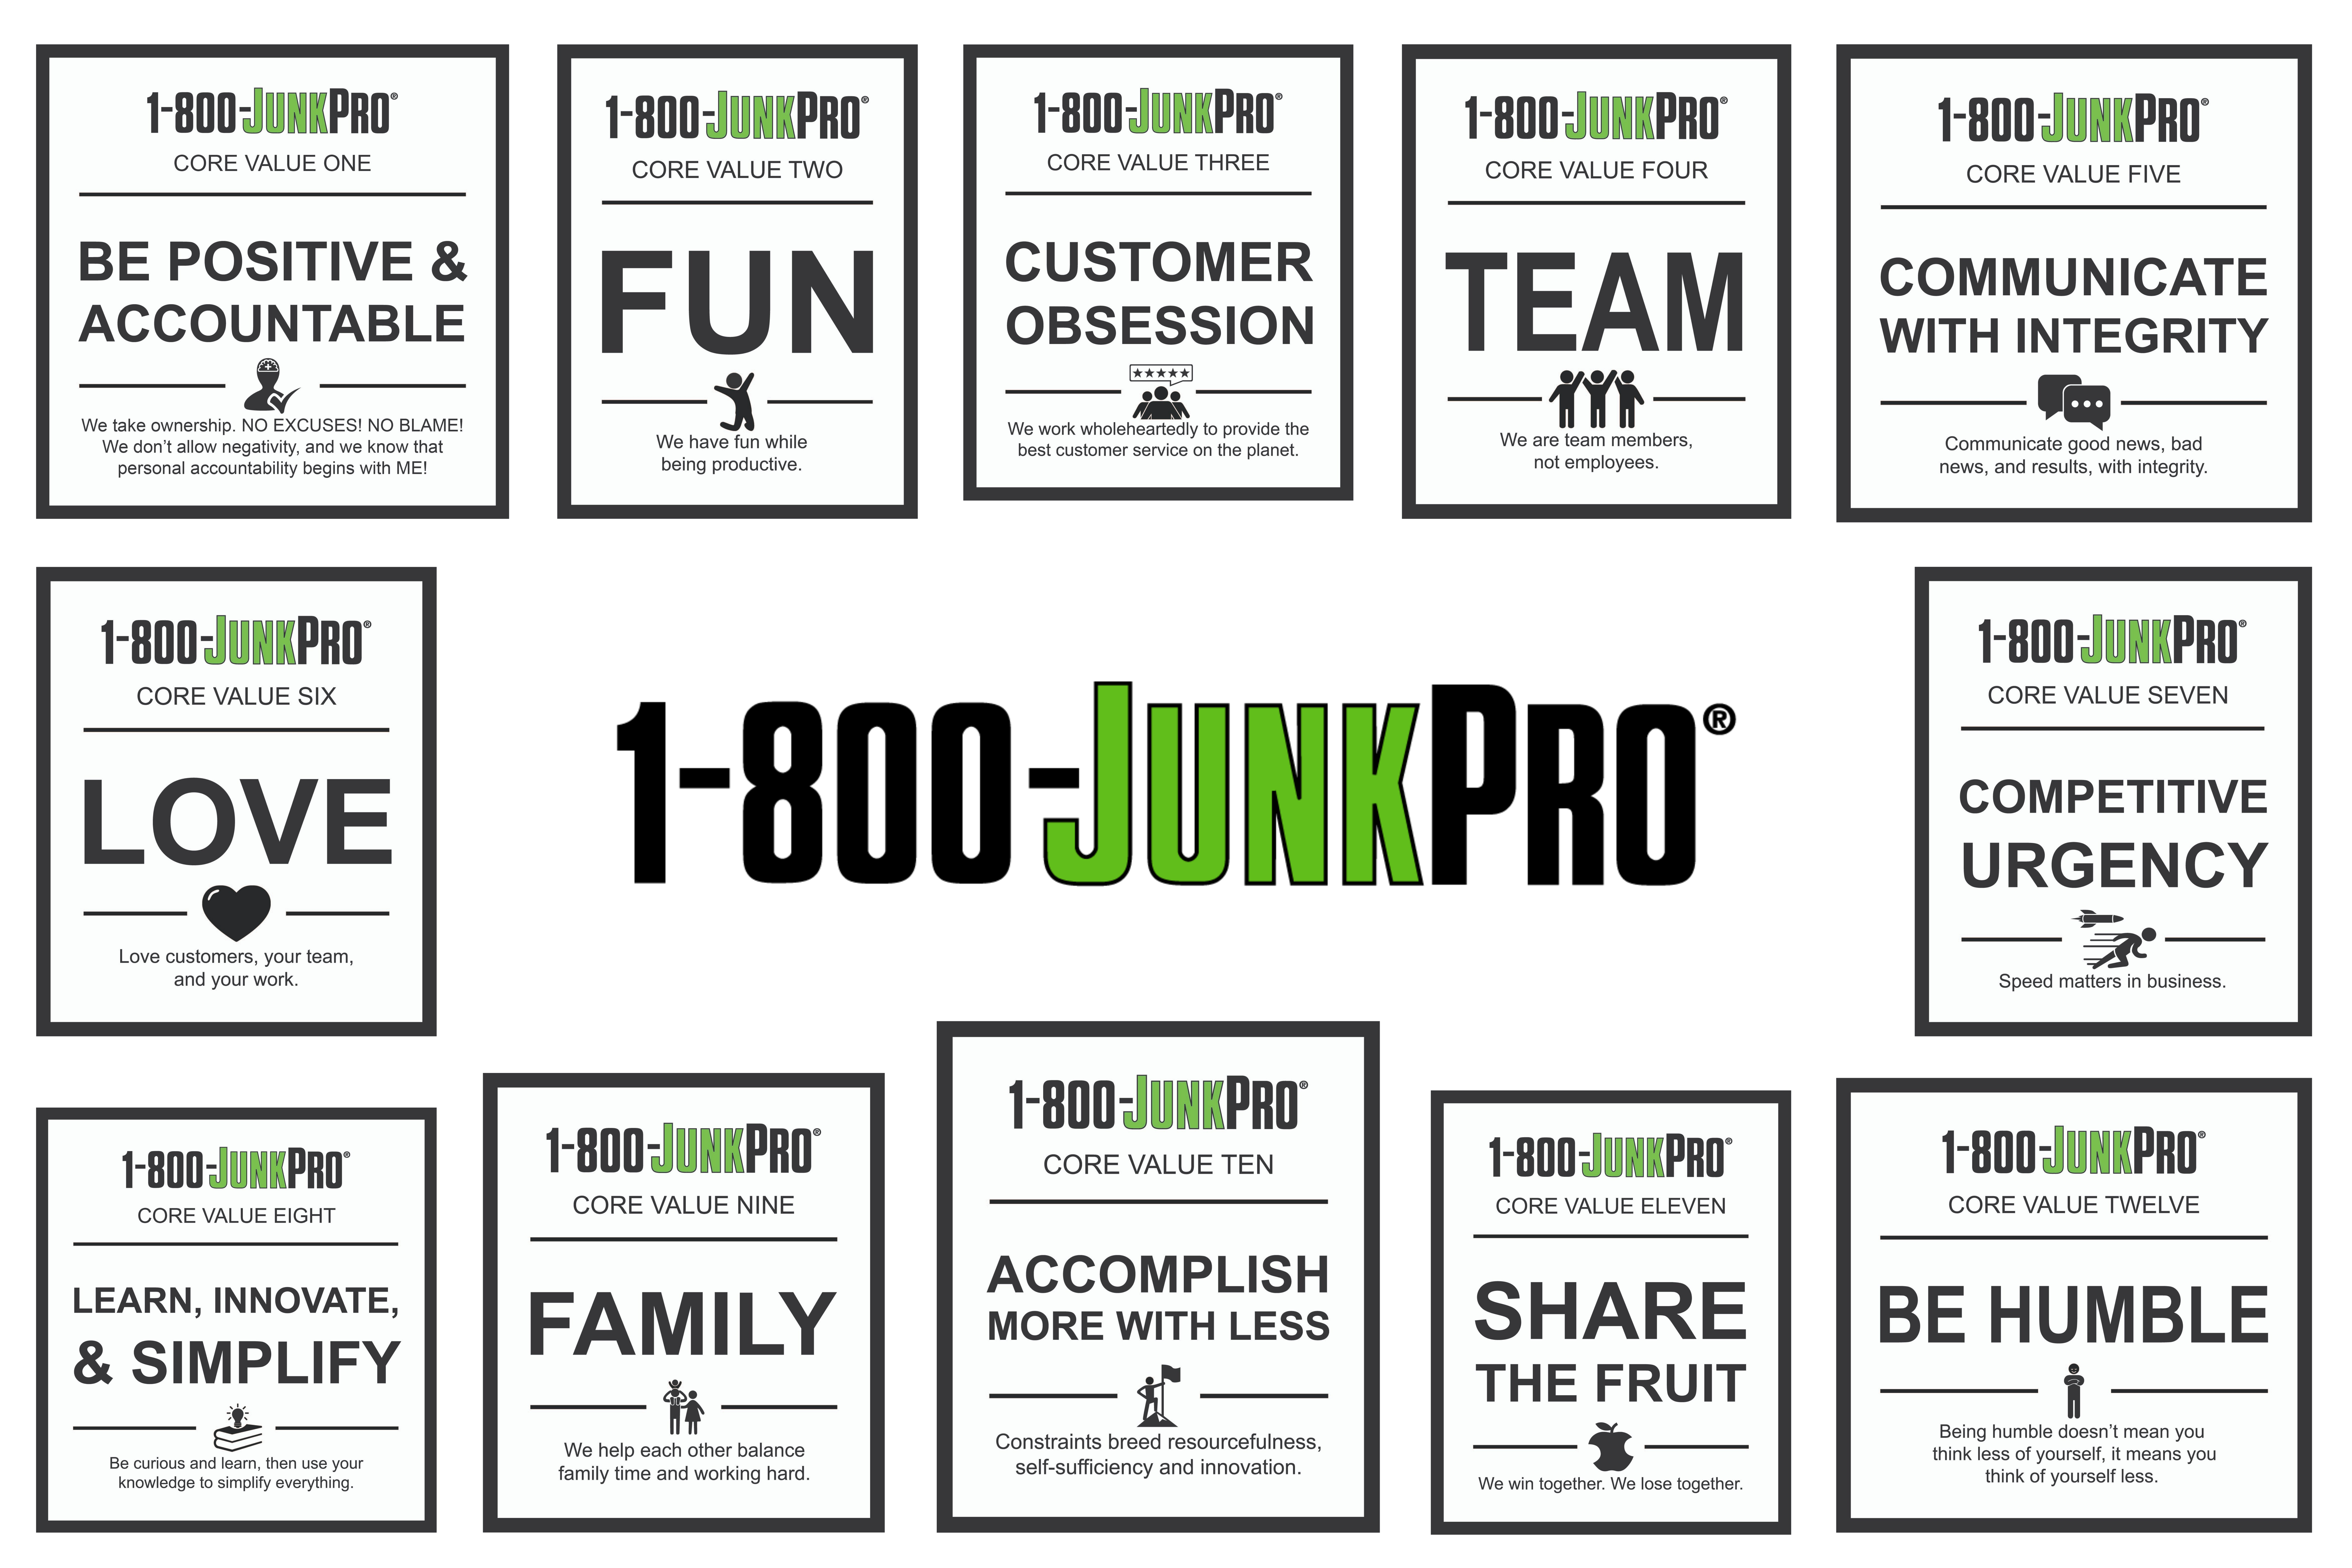 1-800-JUNKPRO Core Values image tiles